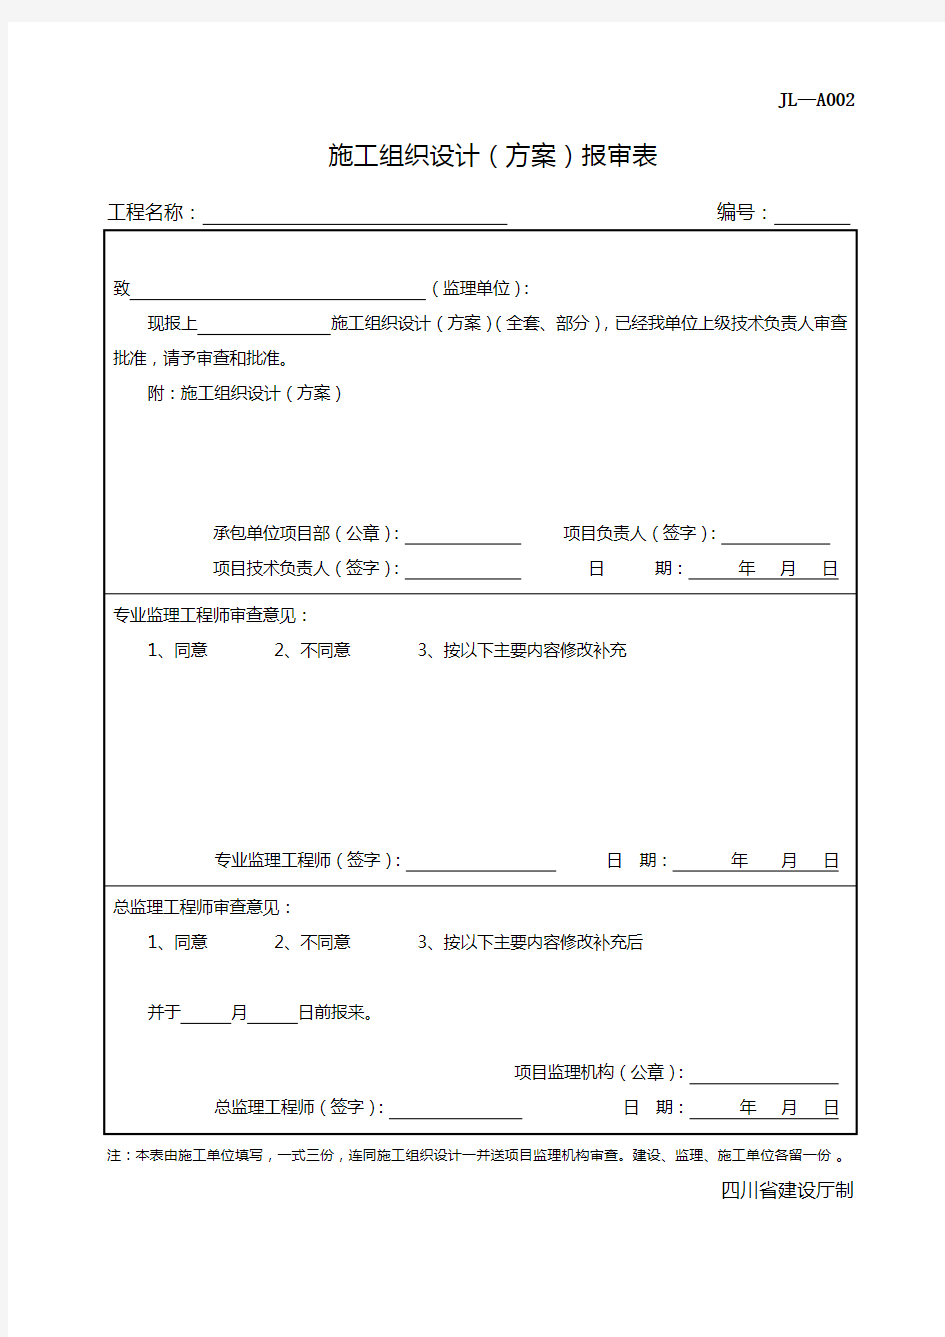 四川-施工组织设计(方案)报审表-JL-A002